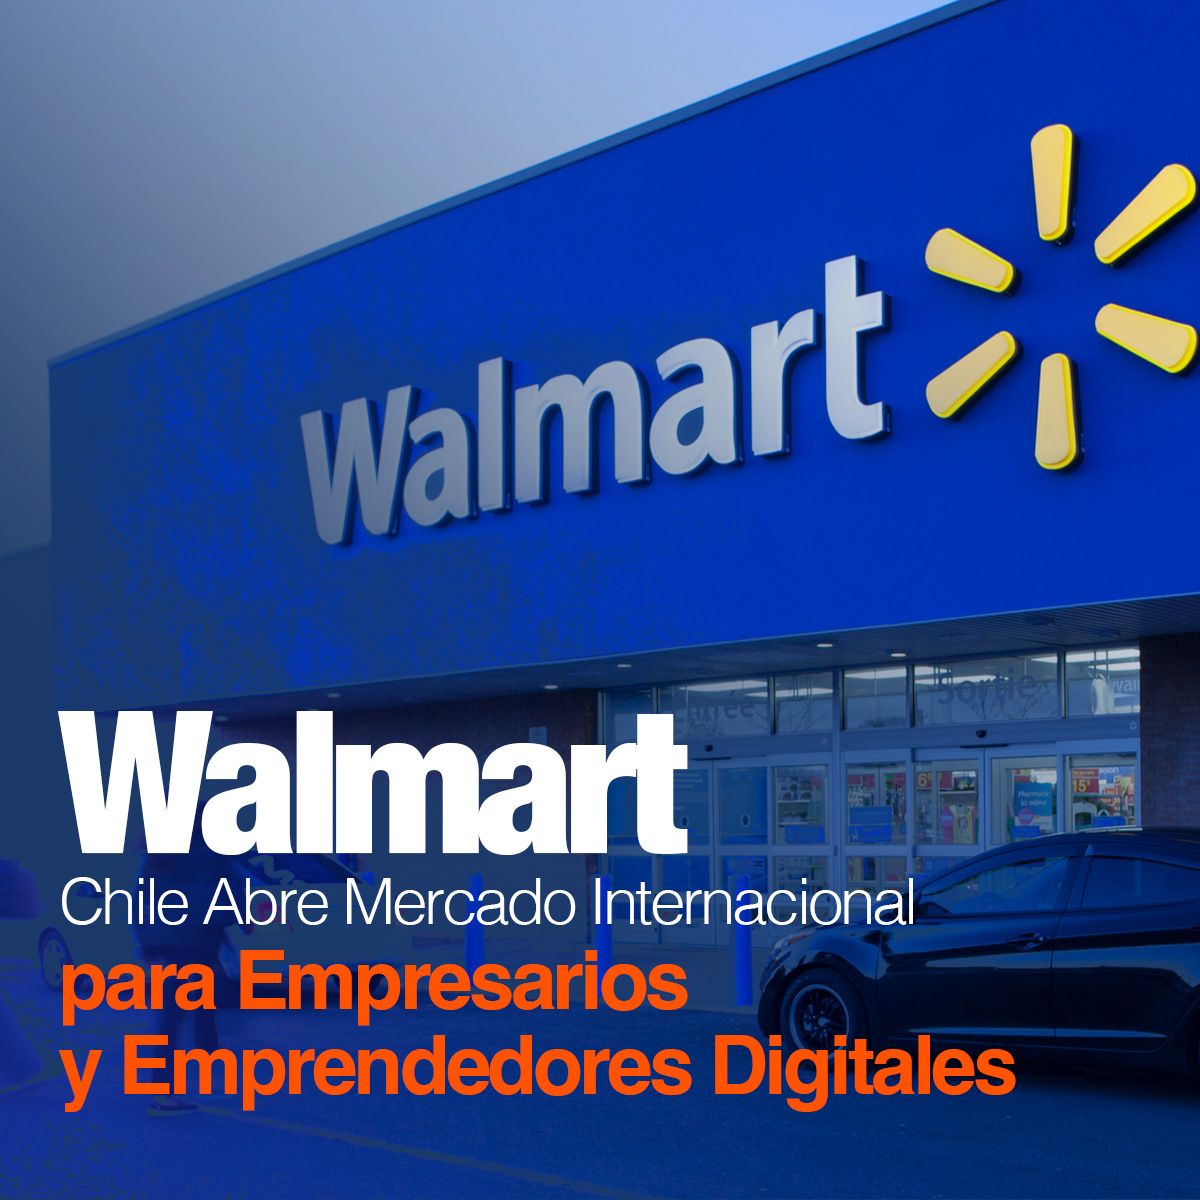 Walmart Chile Abre Mercado Internacional para Empresarios y Emprendedores Digitales